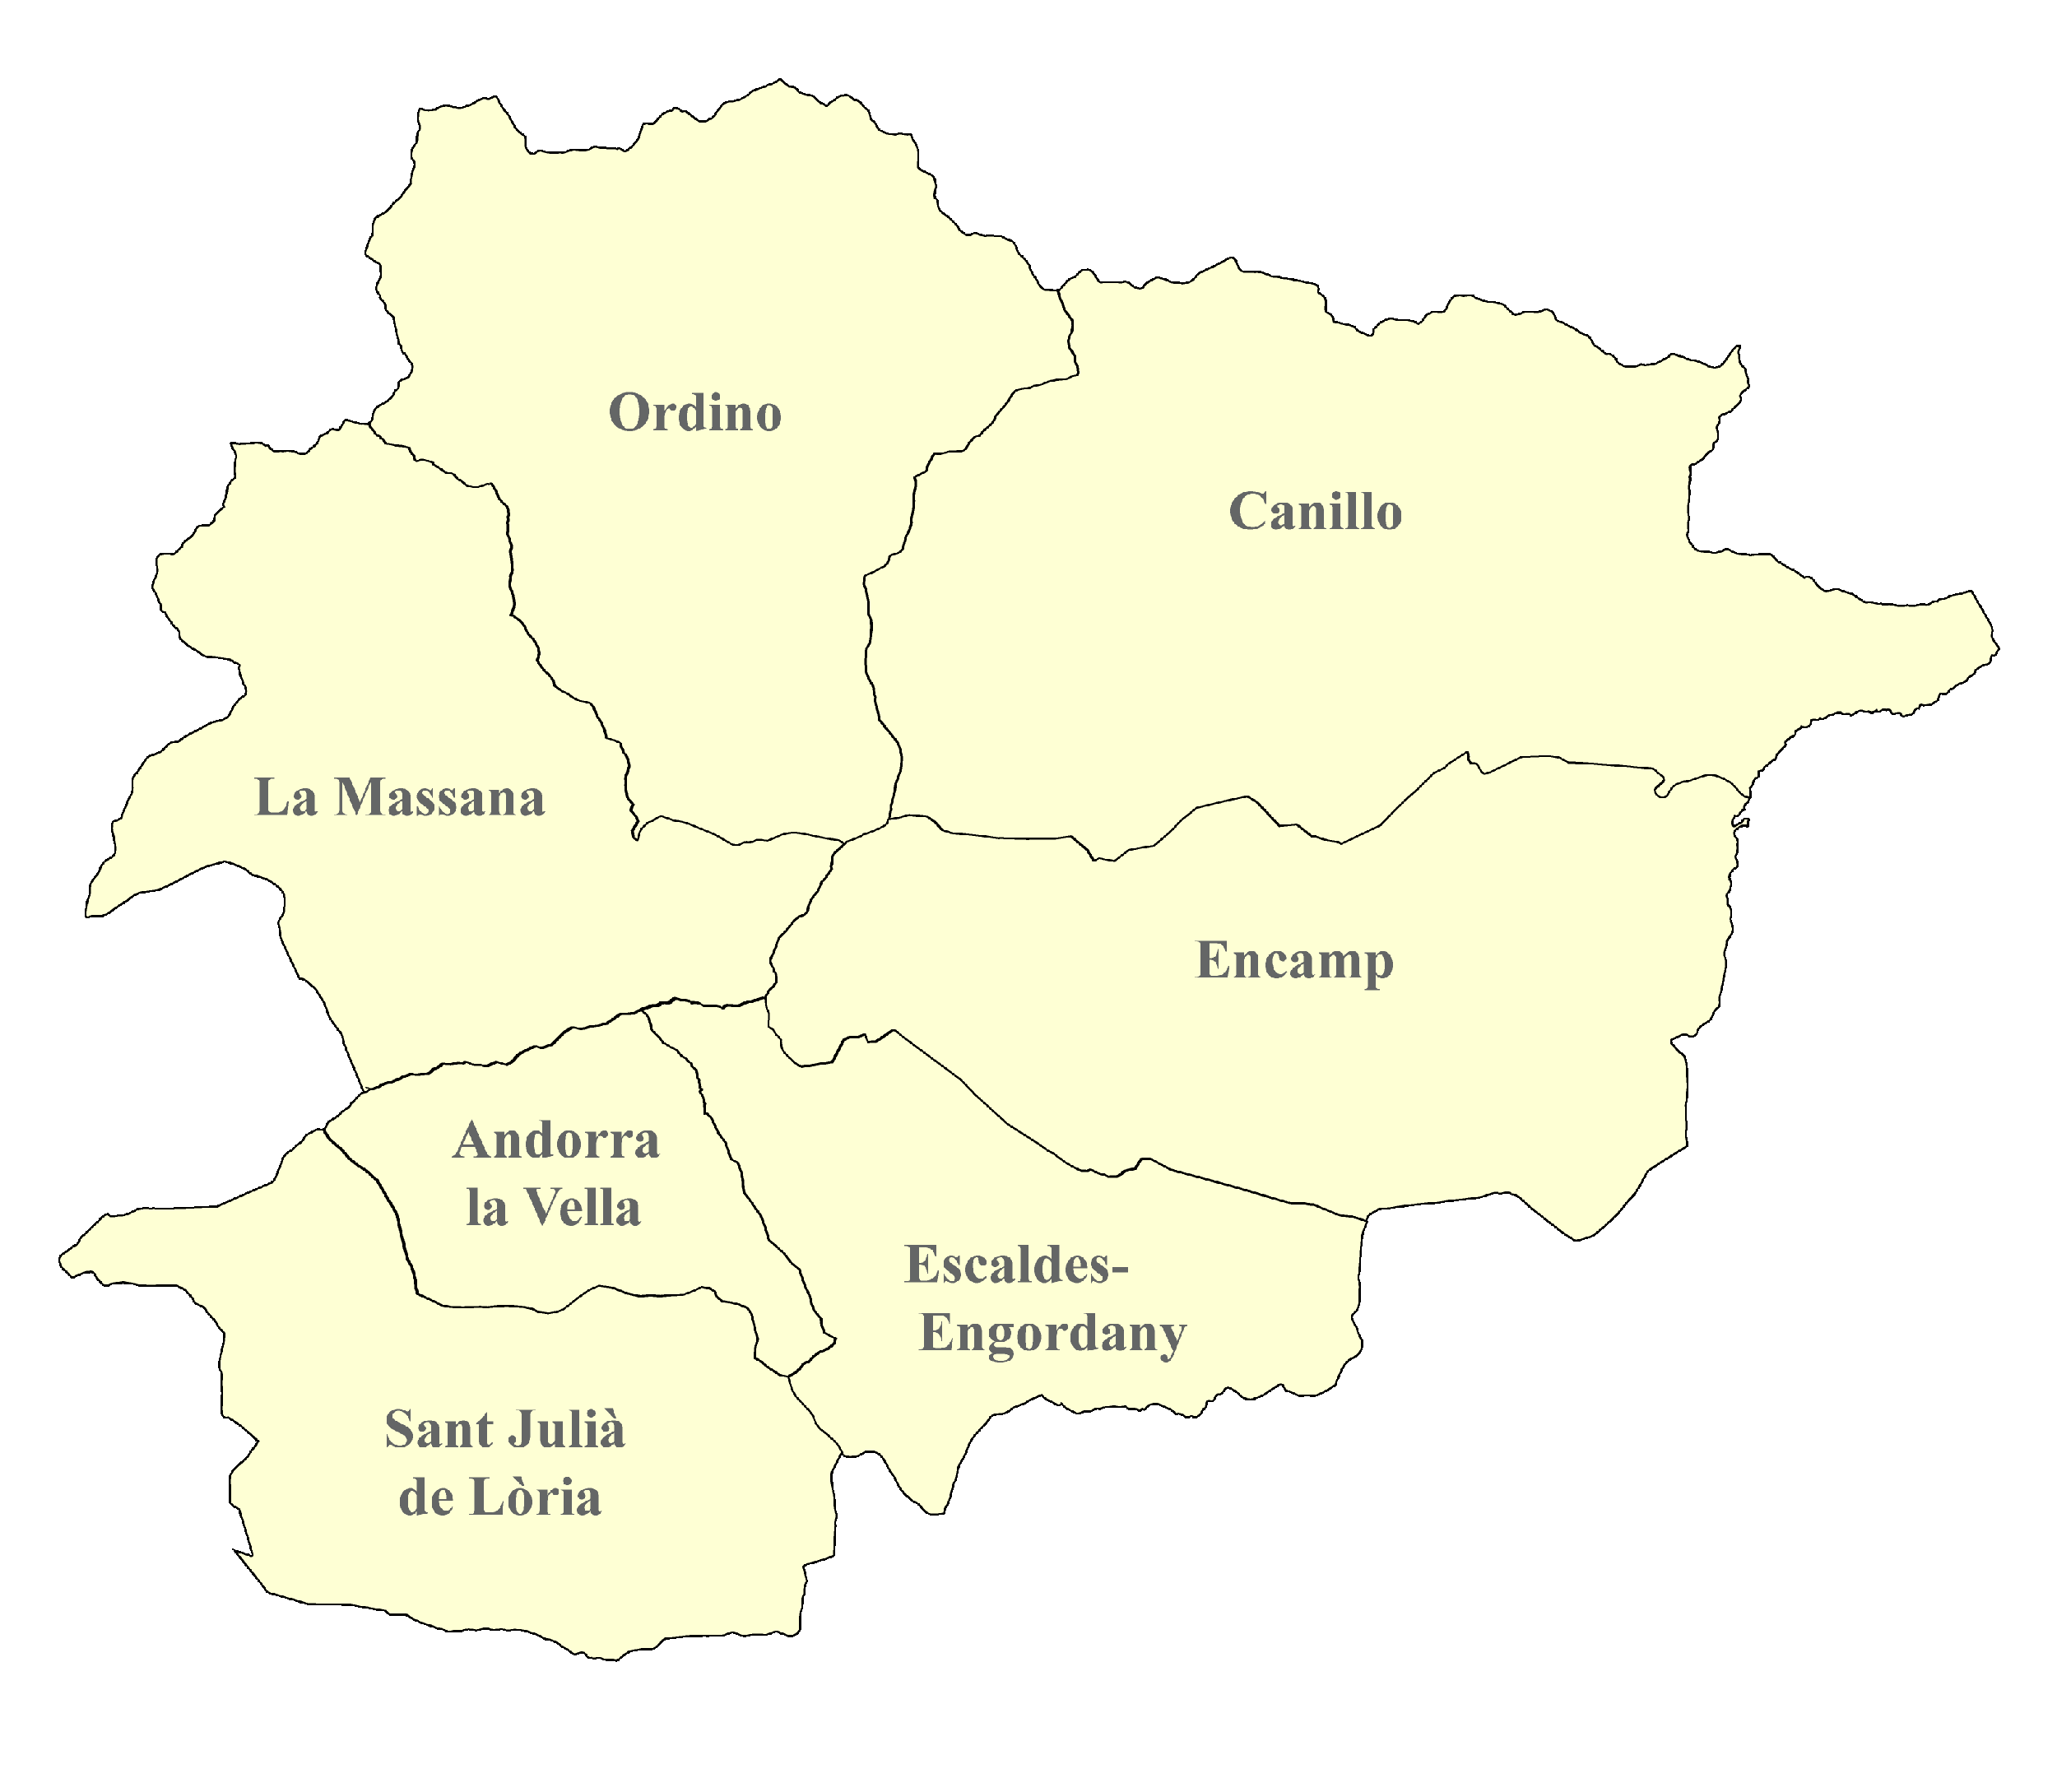 Andorra-Karte nach Regionen gegliedert